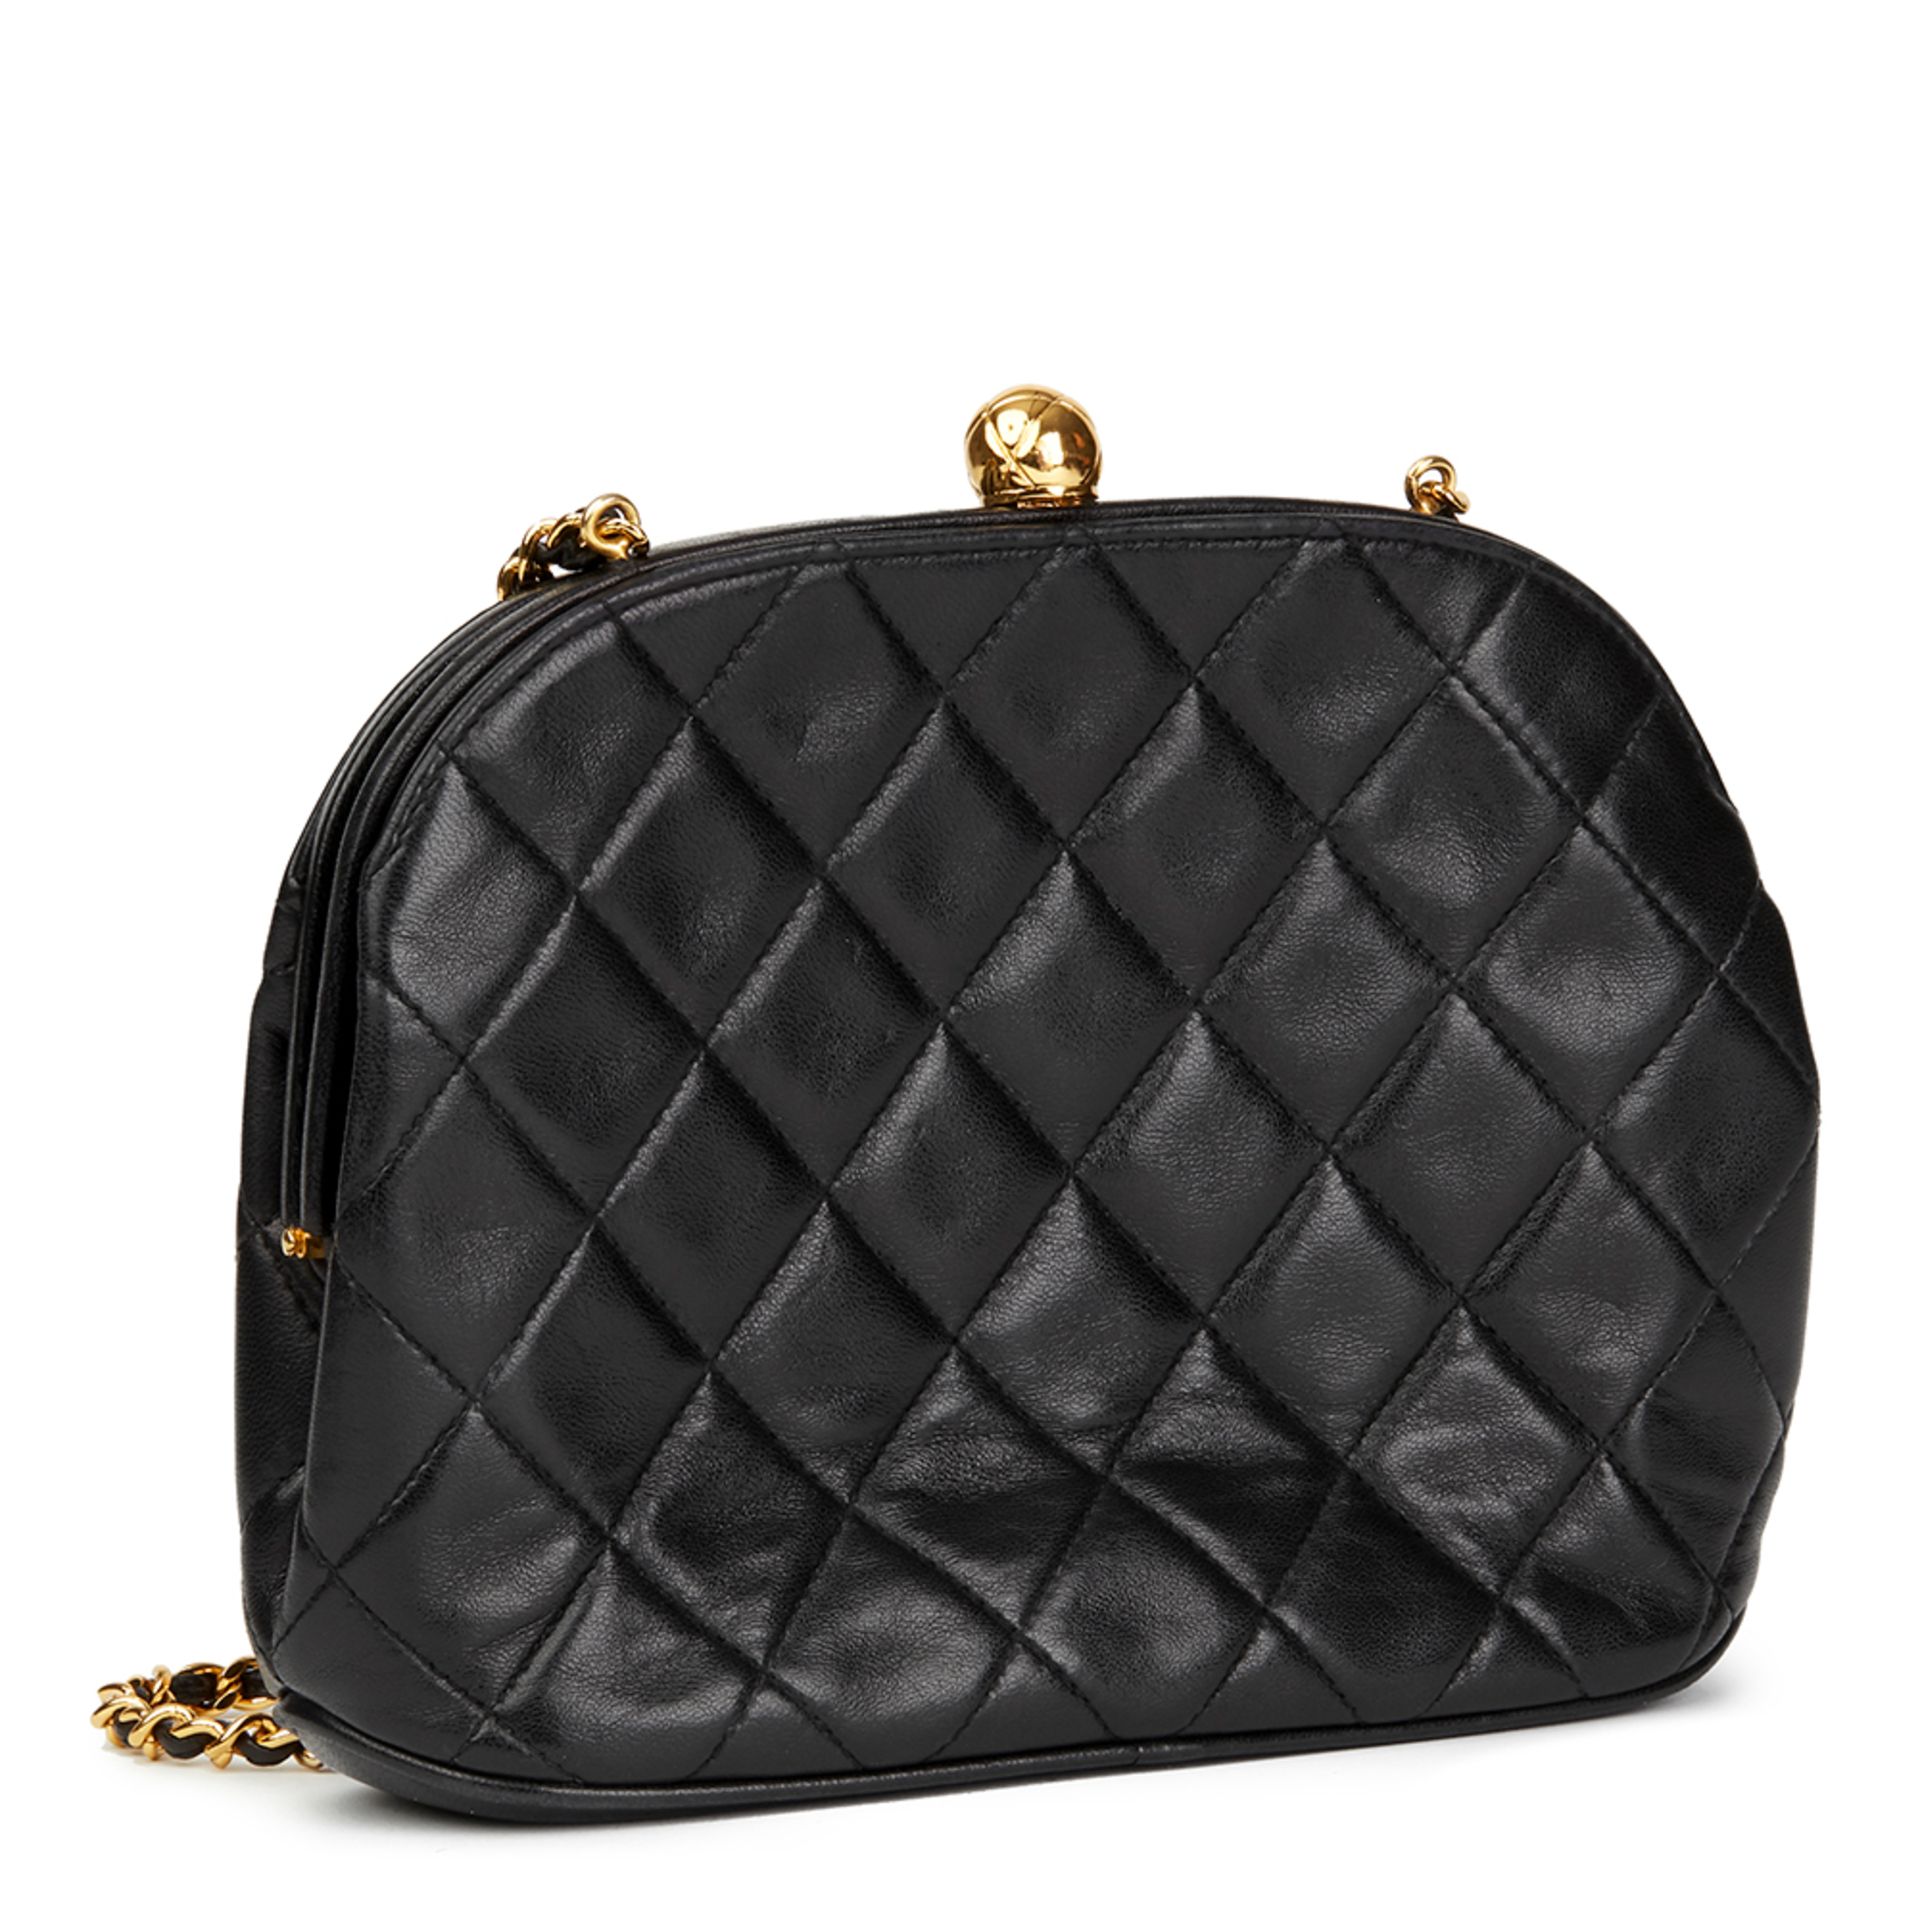 Chanel Black Quilted Lambskin Vintage Timeless Frame Bag - Image 8 of 9